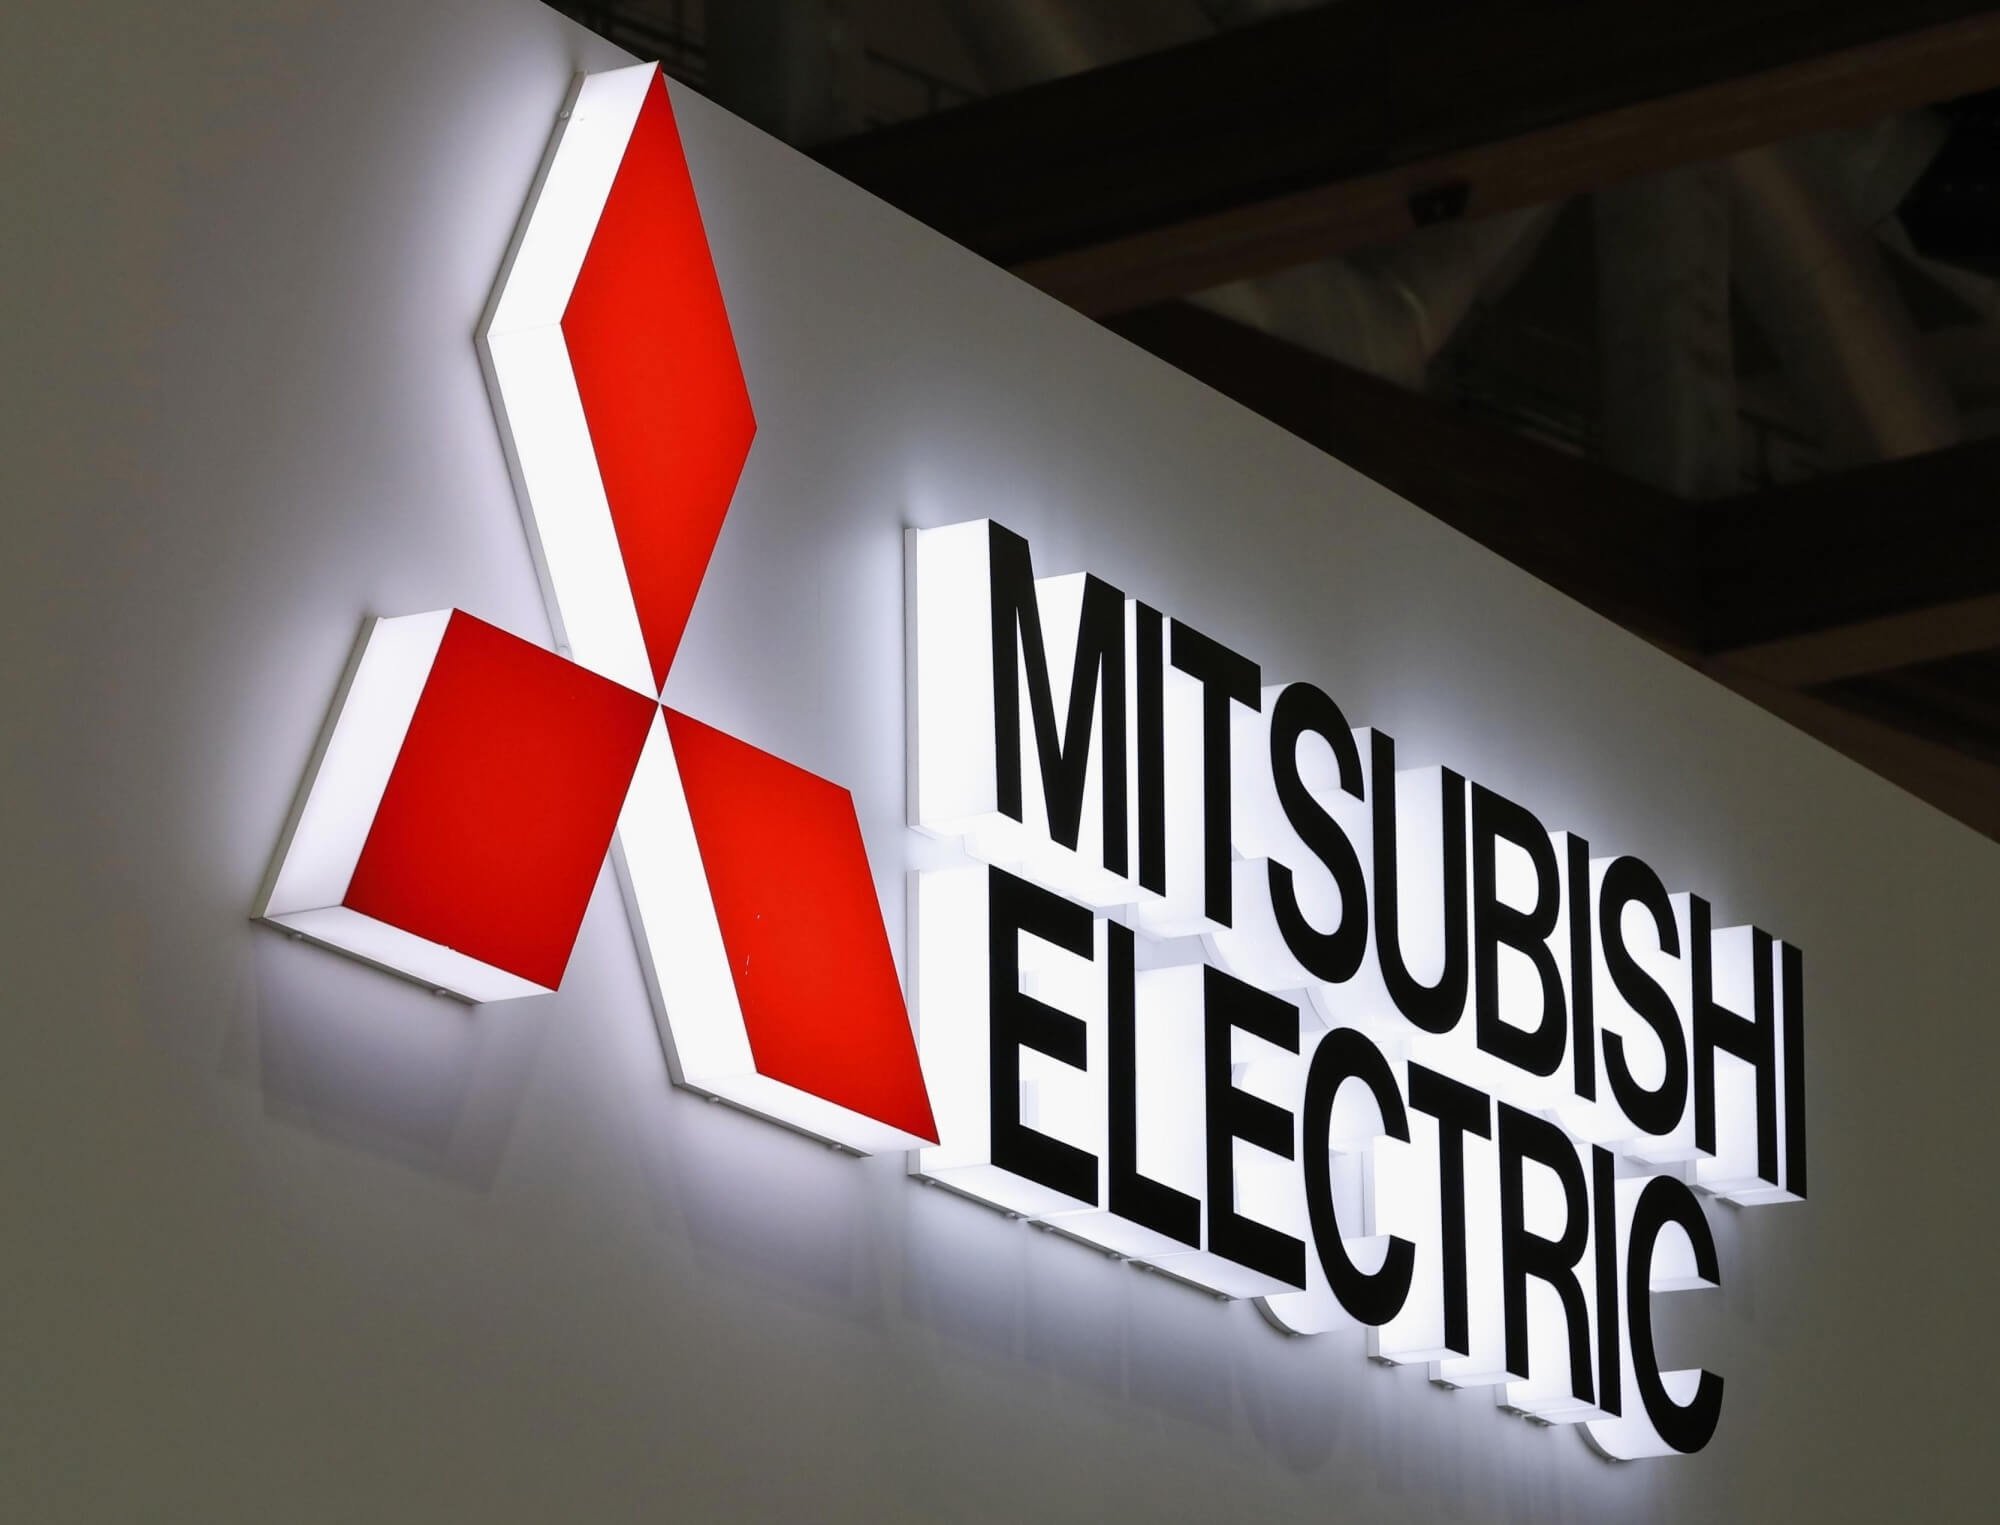 Tìm hiểu về thương hiệu máy lạnh Mitsubishi Electric